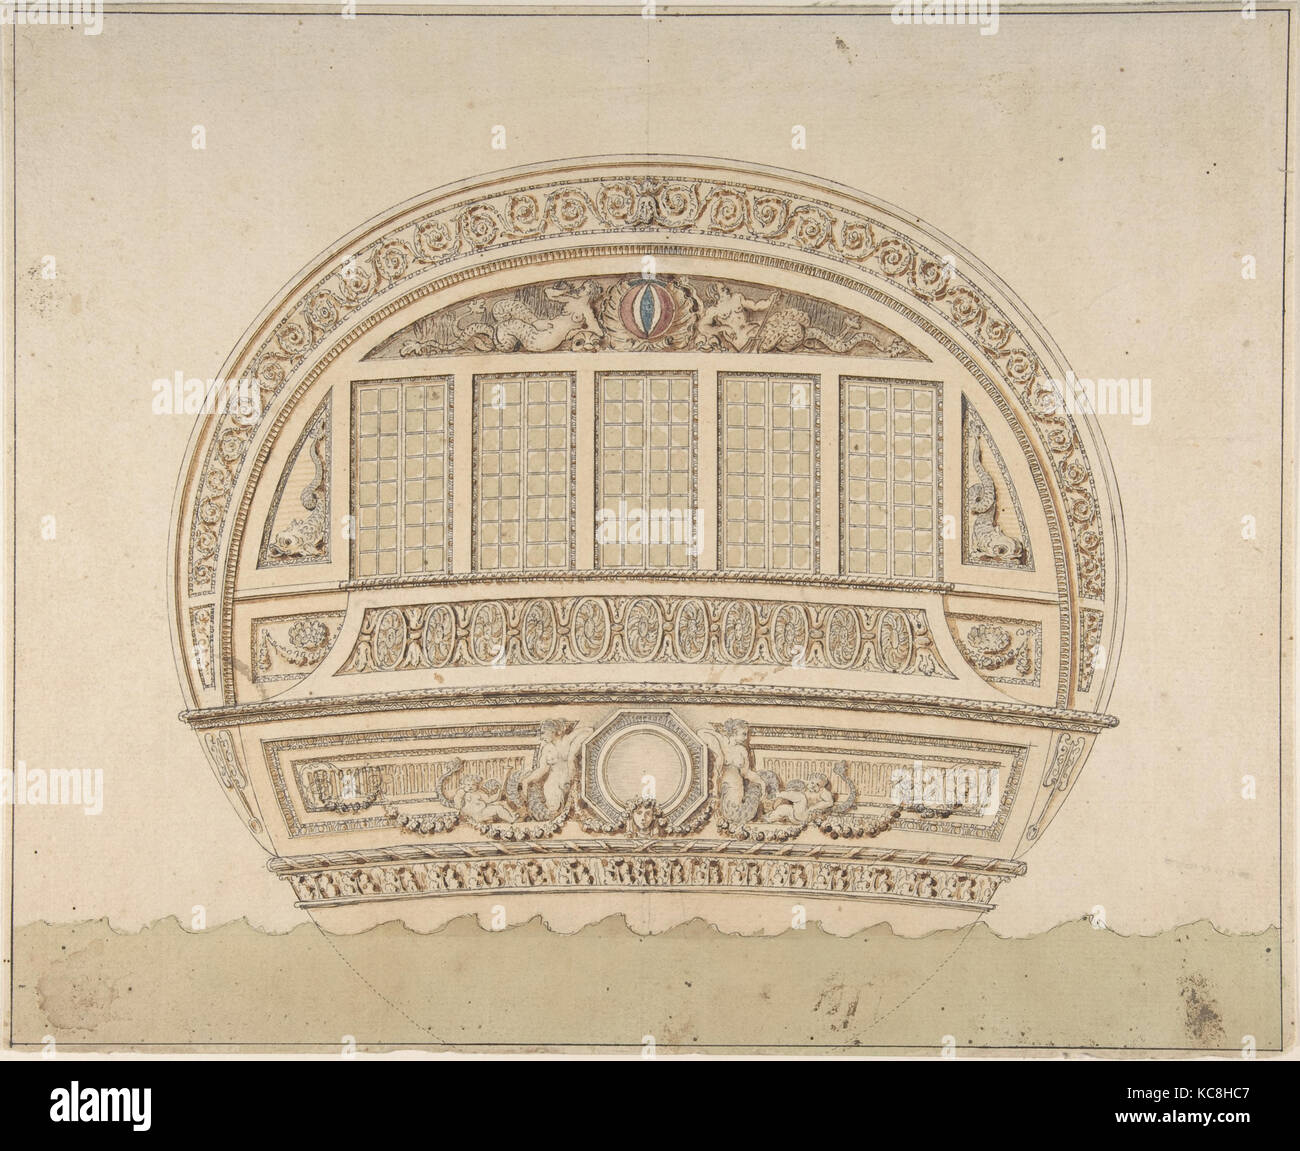 Pour la tige de la conception d'un navire, anonyme, le français, 18e siècle Banque D'Images